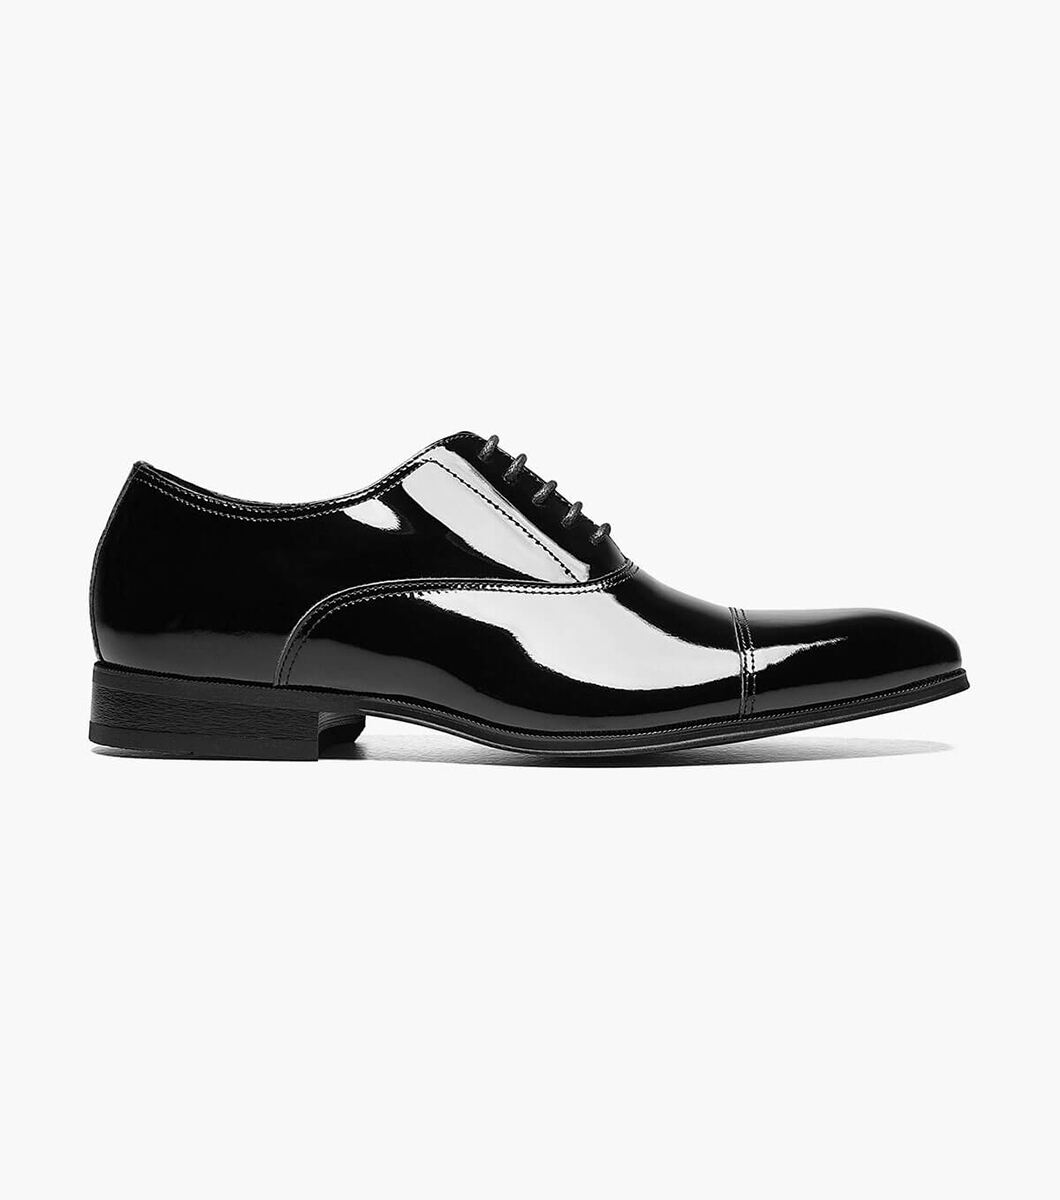 Florsheim Tux Cap Toe Black Patent Mens Oxford Shoes 14213 004 